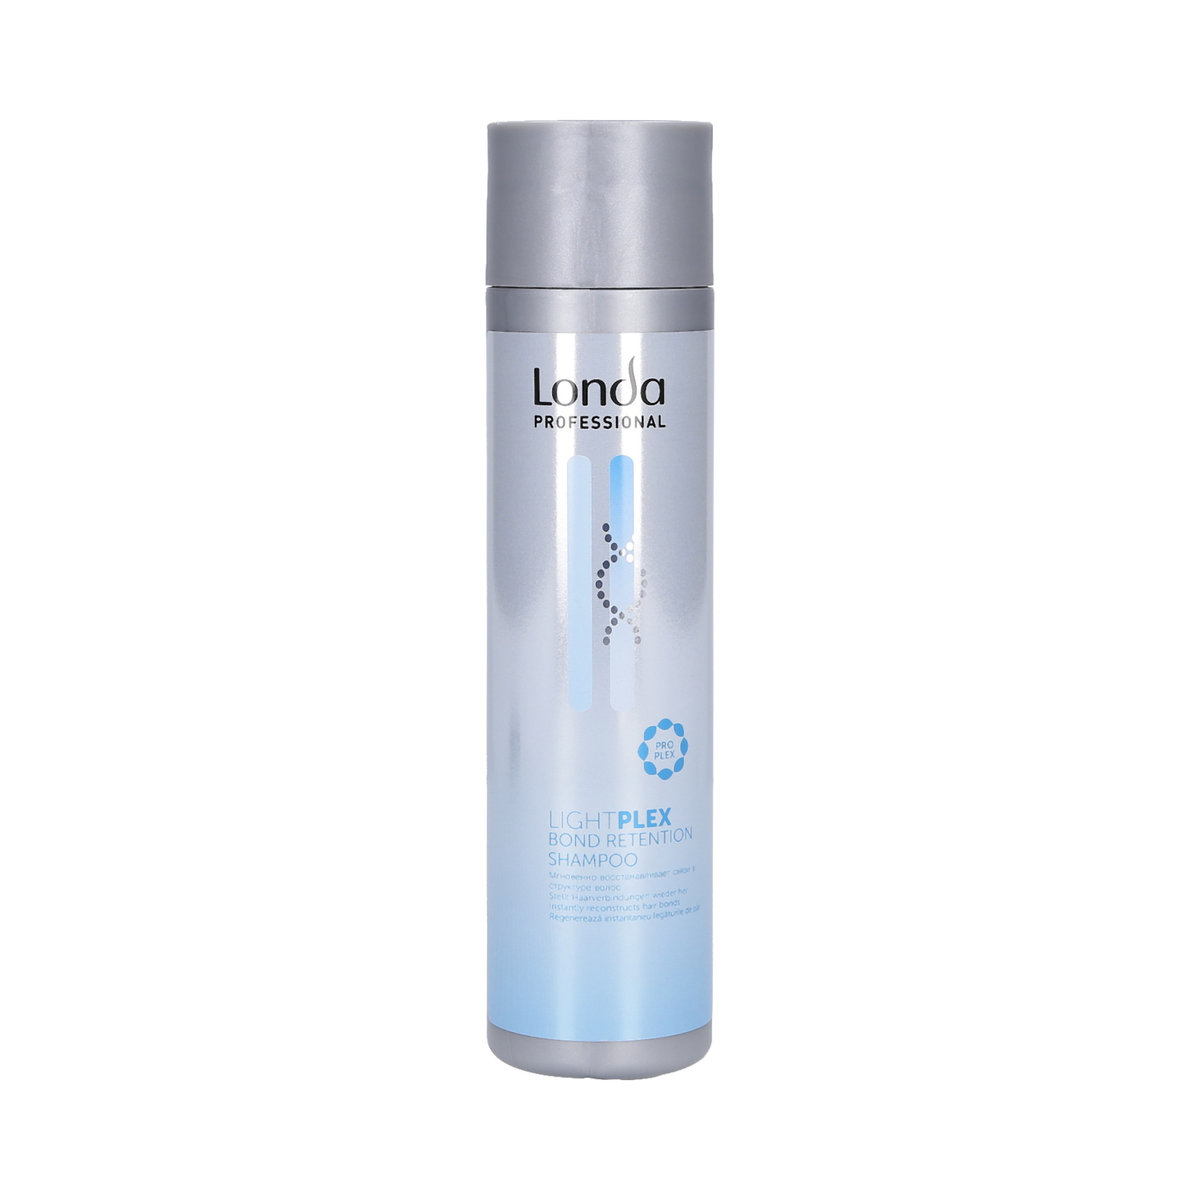 Londa Professional Professional LightPlex Bond Retention Shampoo szampon do włosów 250 ml